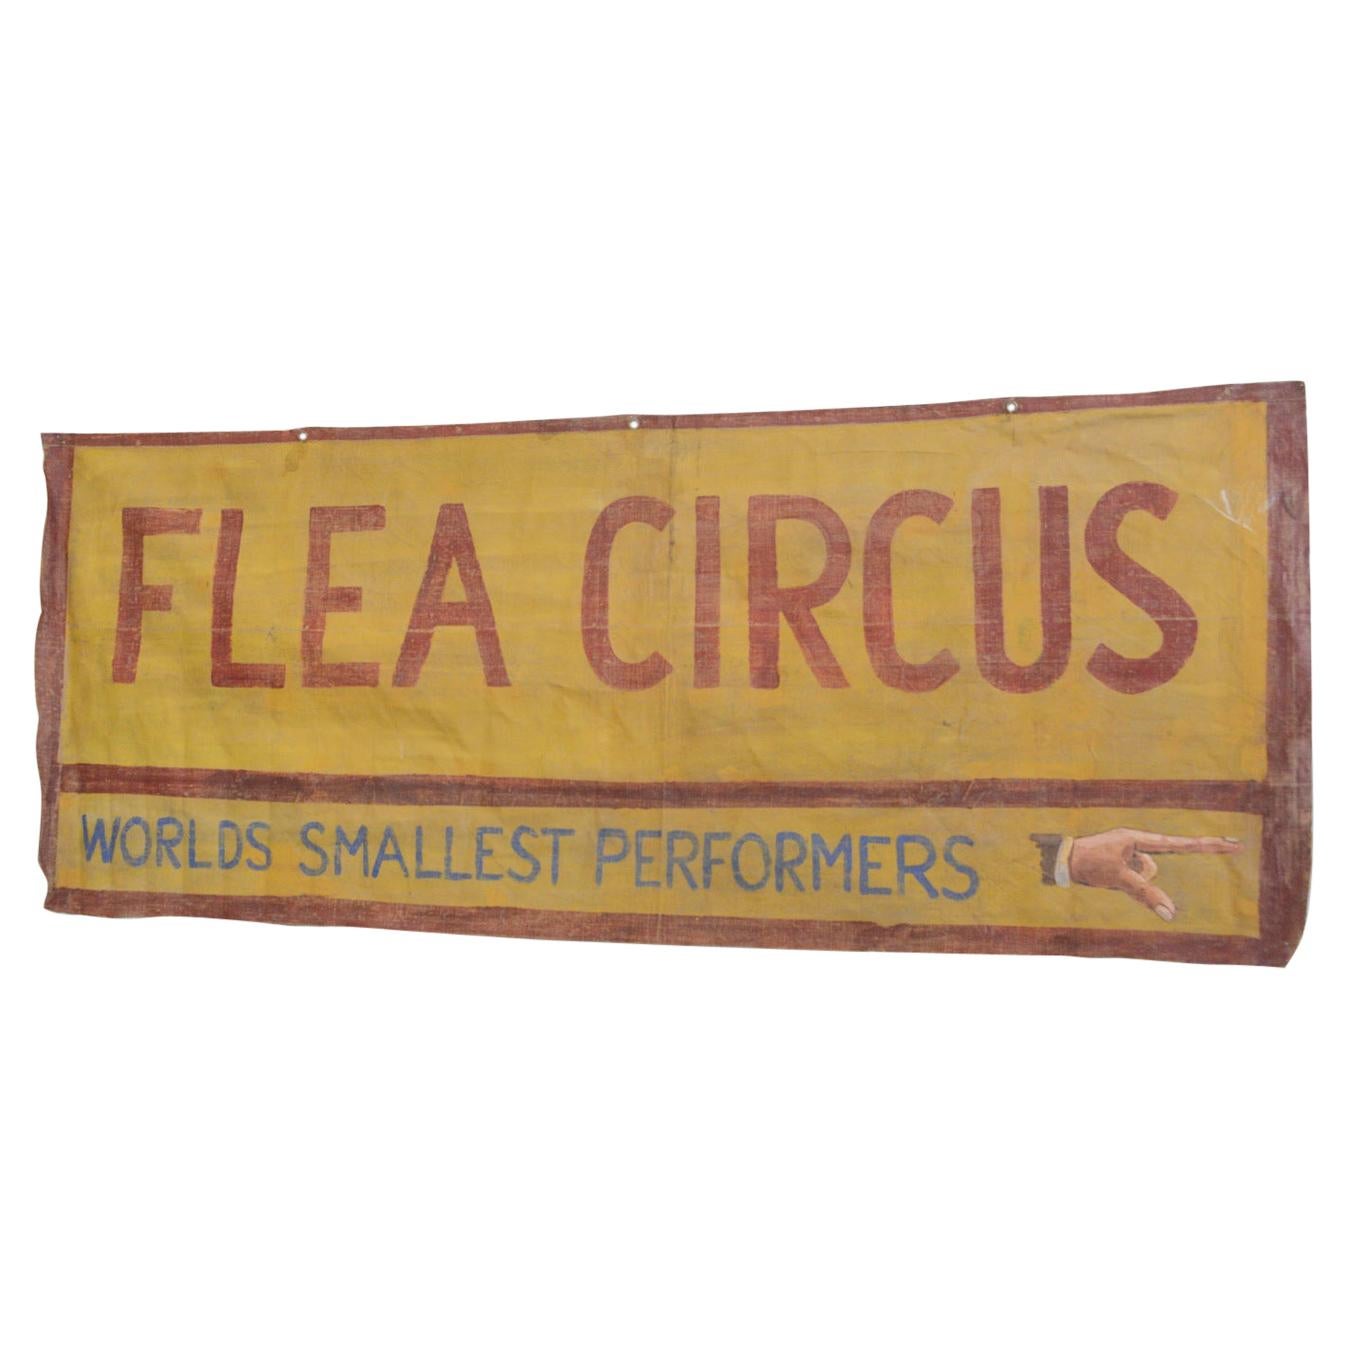 Flea Circus Canvas Banner, circa 1950s